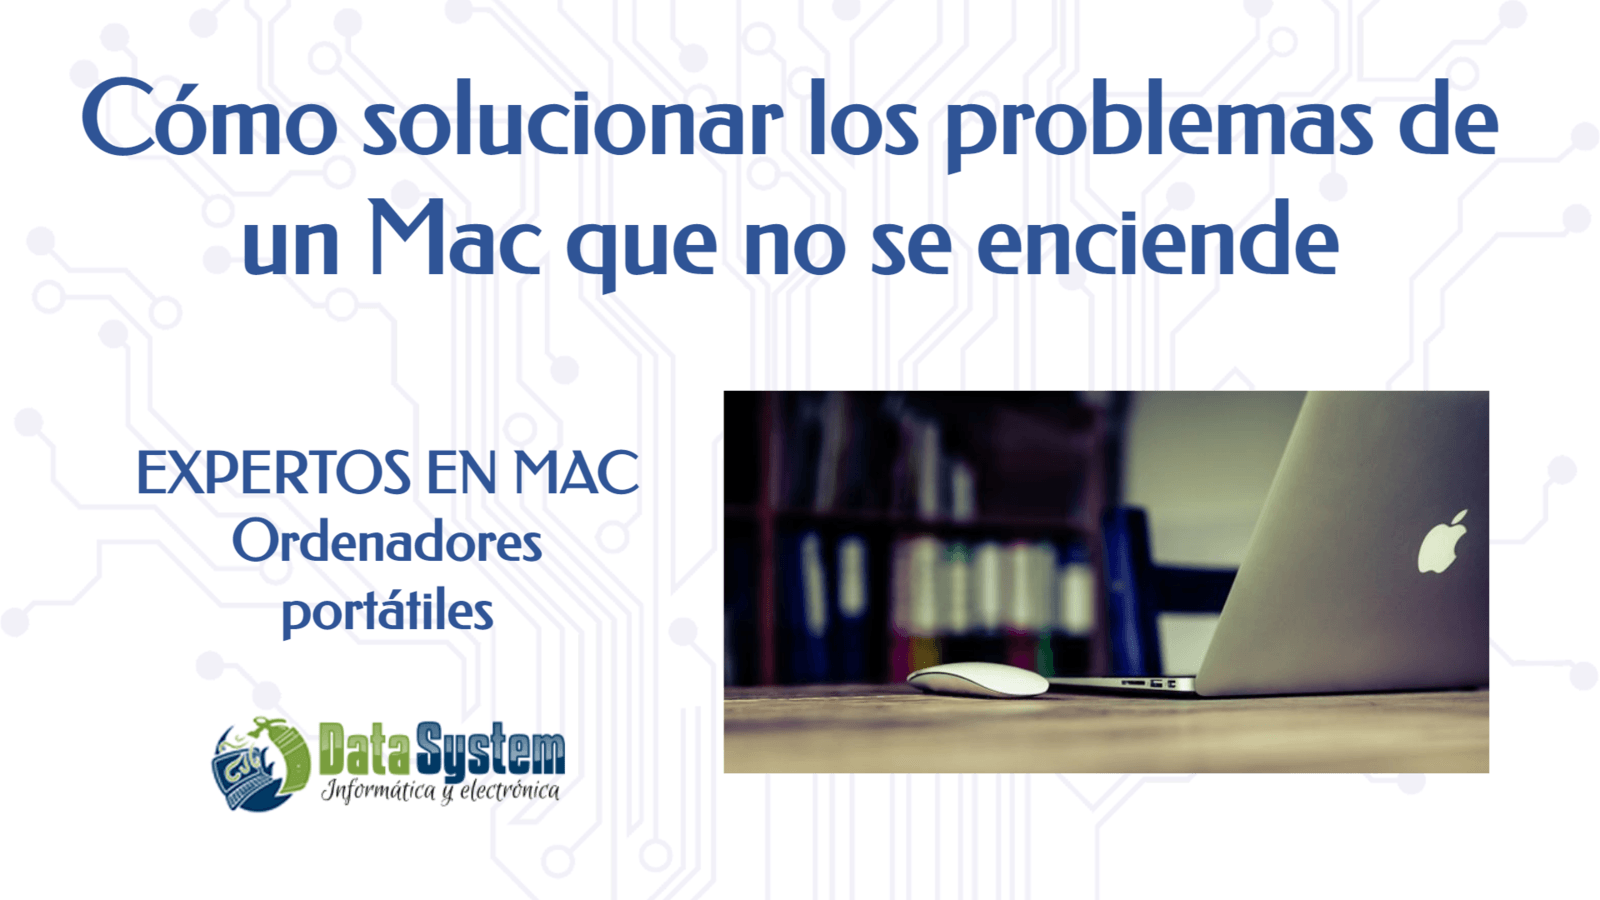 Solucionar los problemas de un Mac que no se enciende.